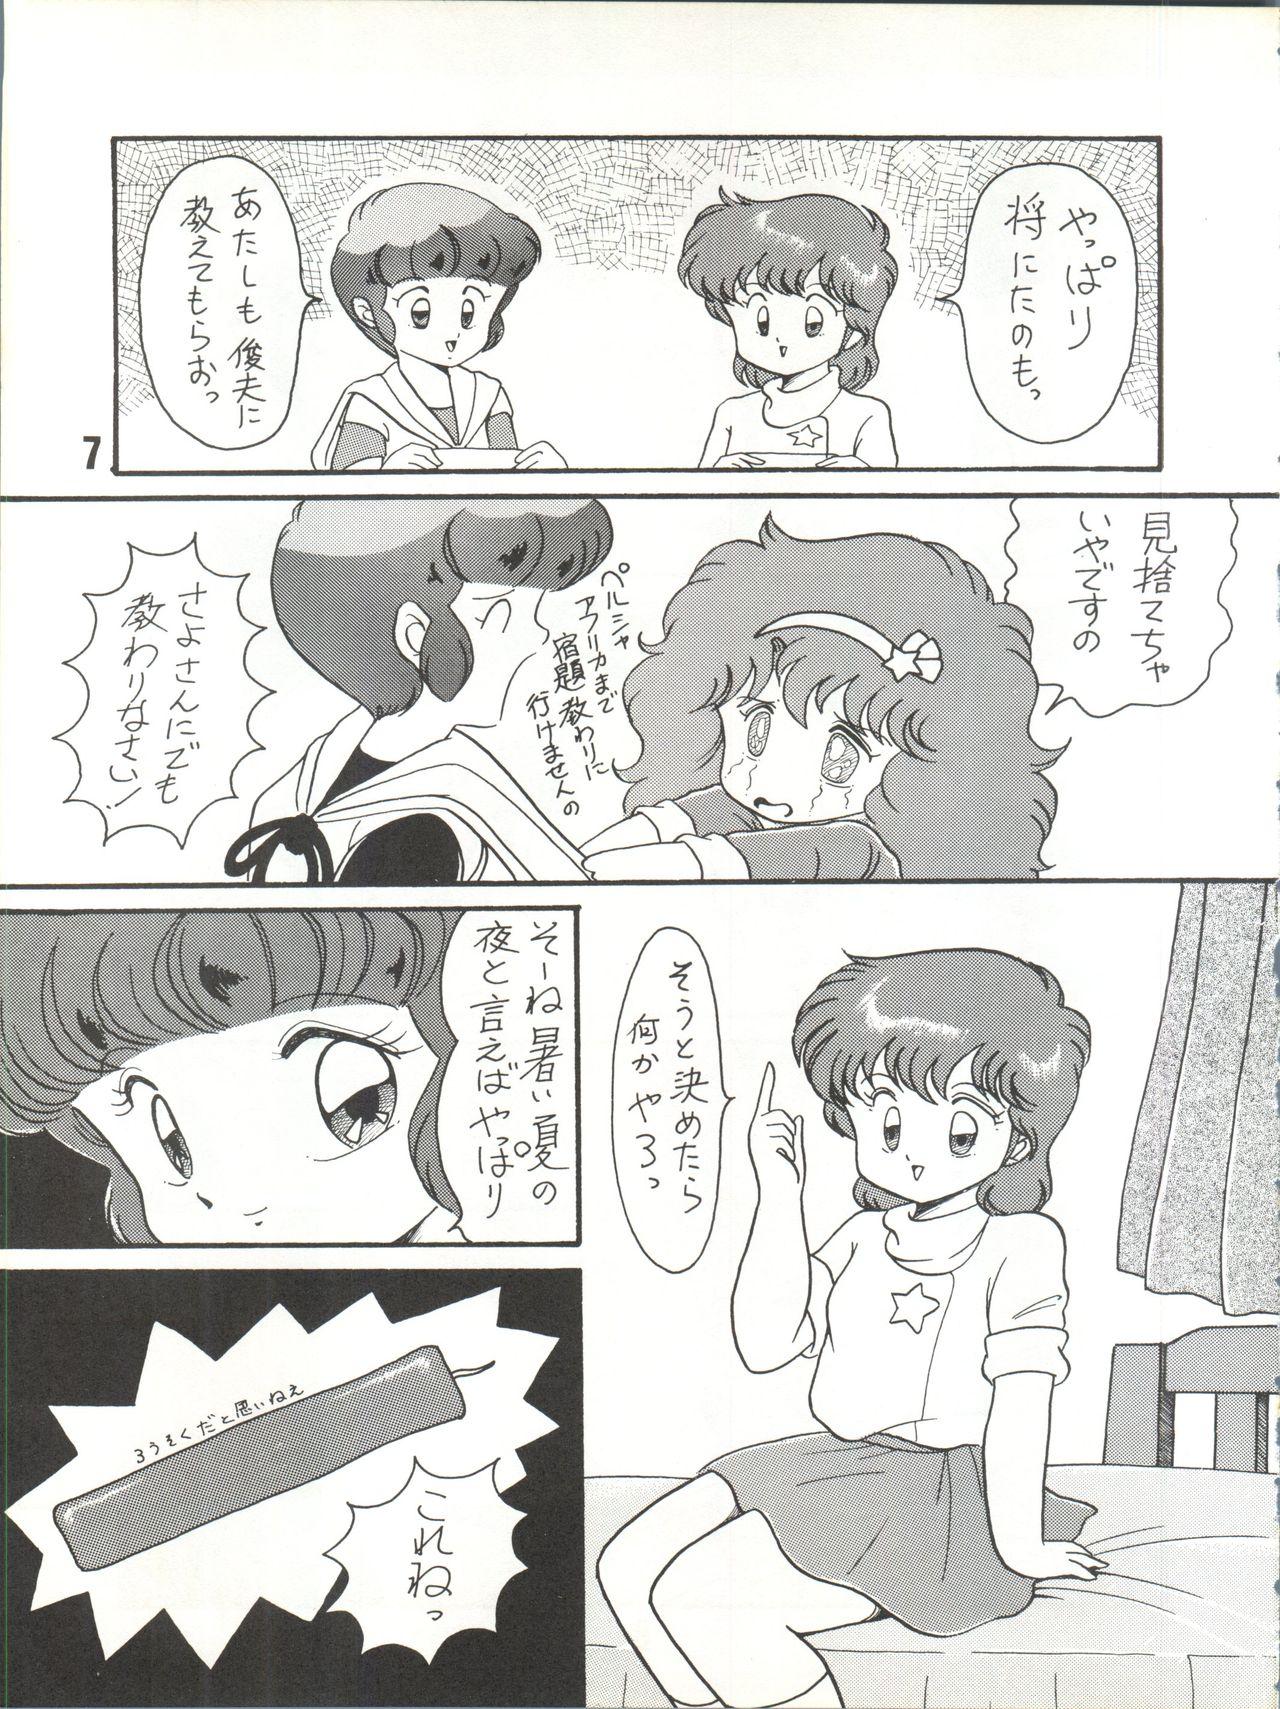 Gape Magical Ponponpon 7 - Magical emi Creamy mami Mahou no yousei persia Idol densetsu eriko Idol tenshi youkoso yoko Foreskin - Page 8